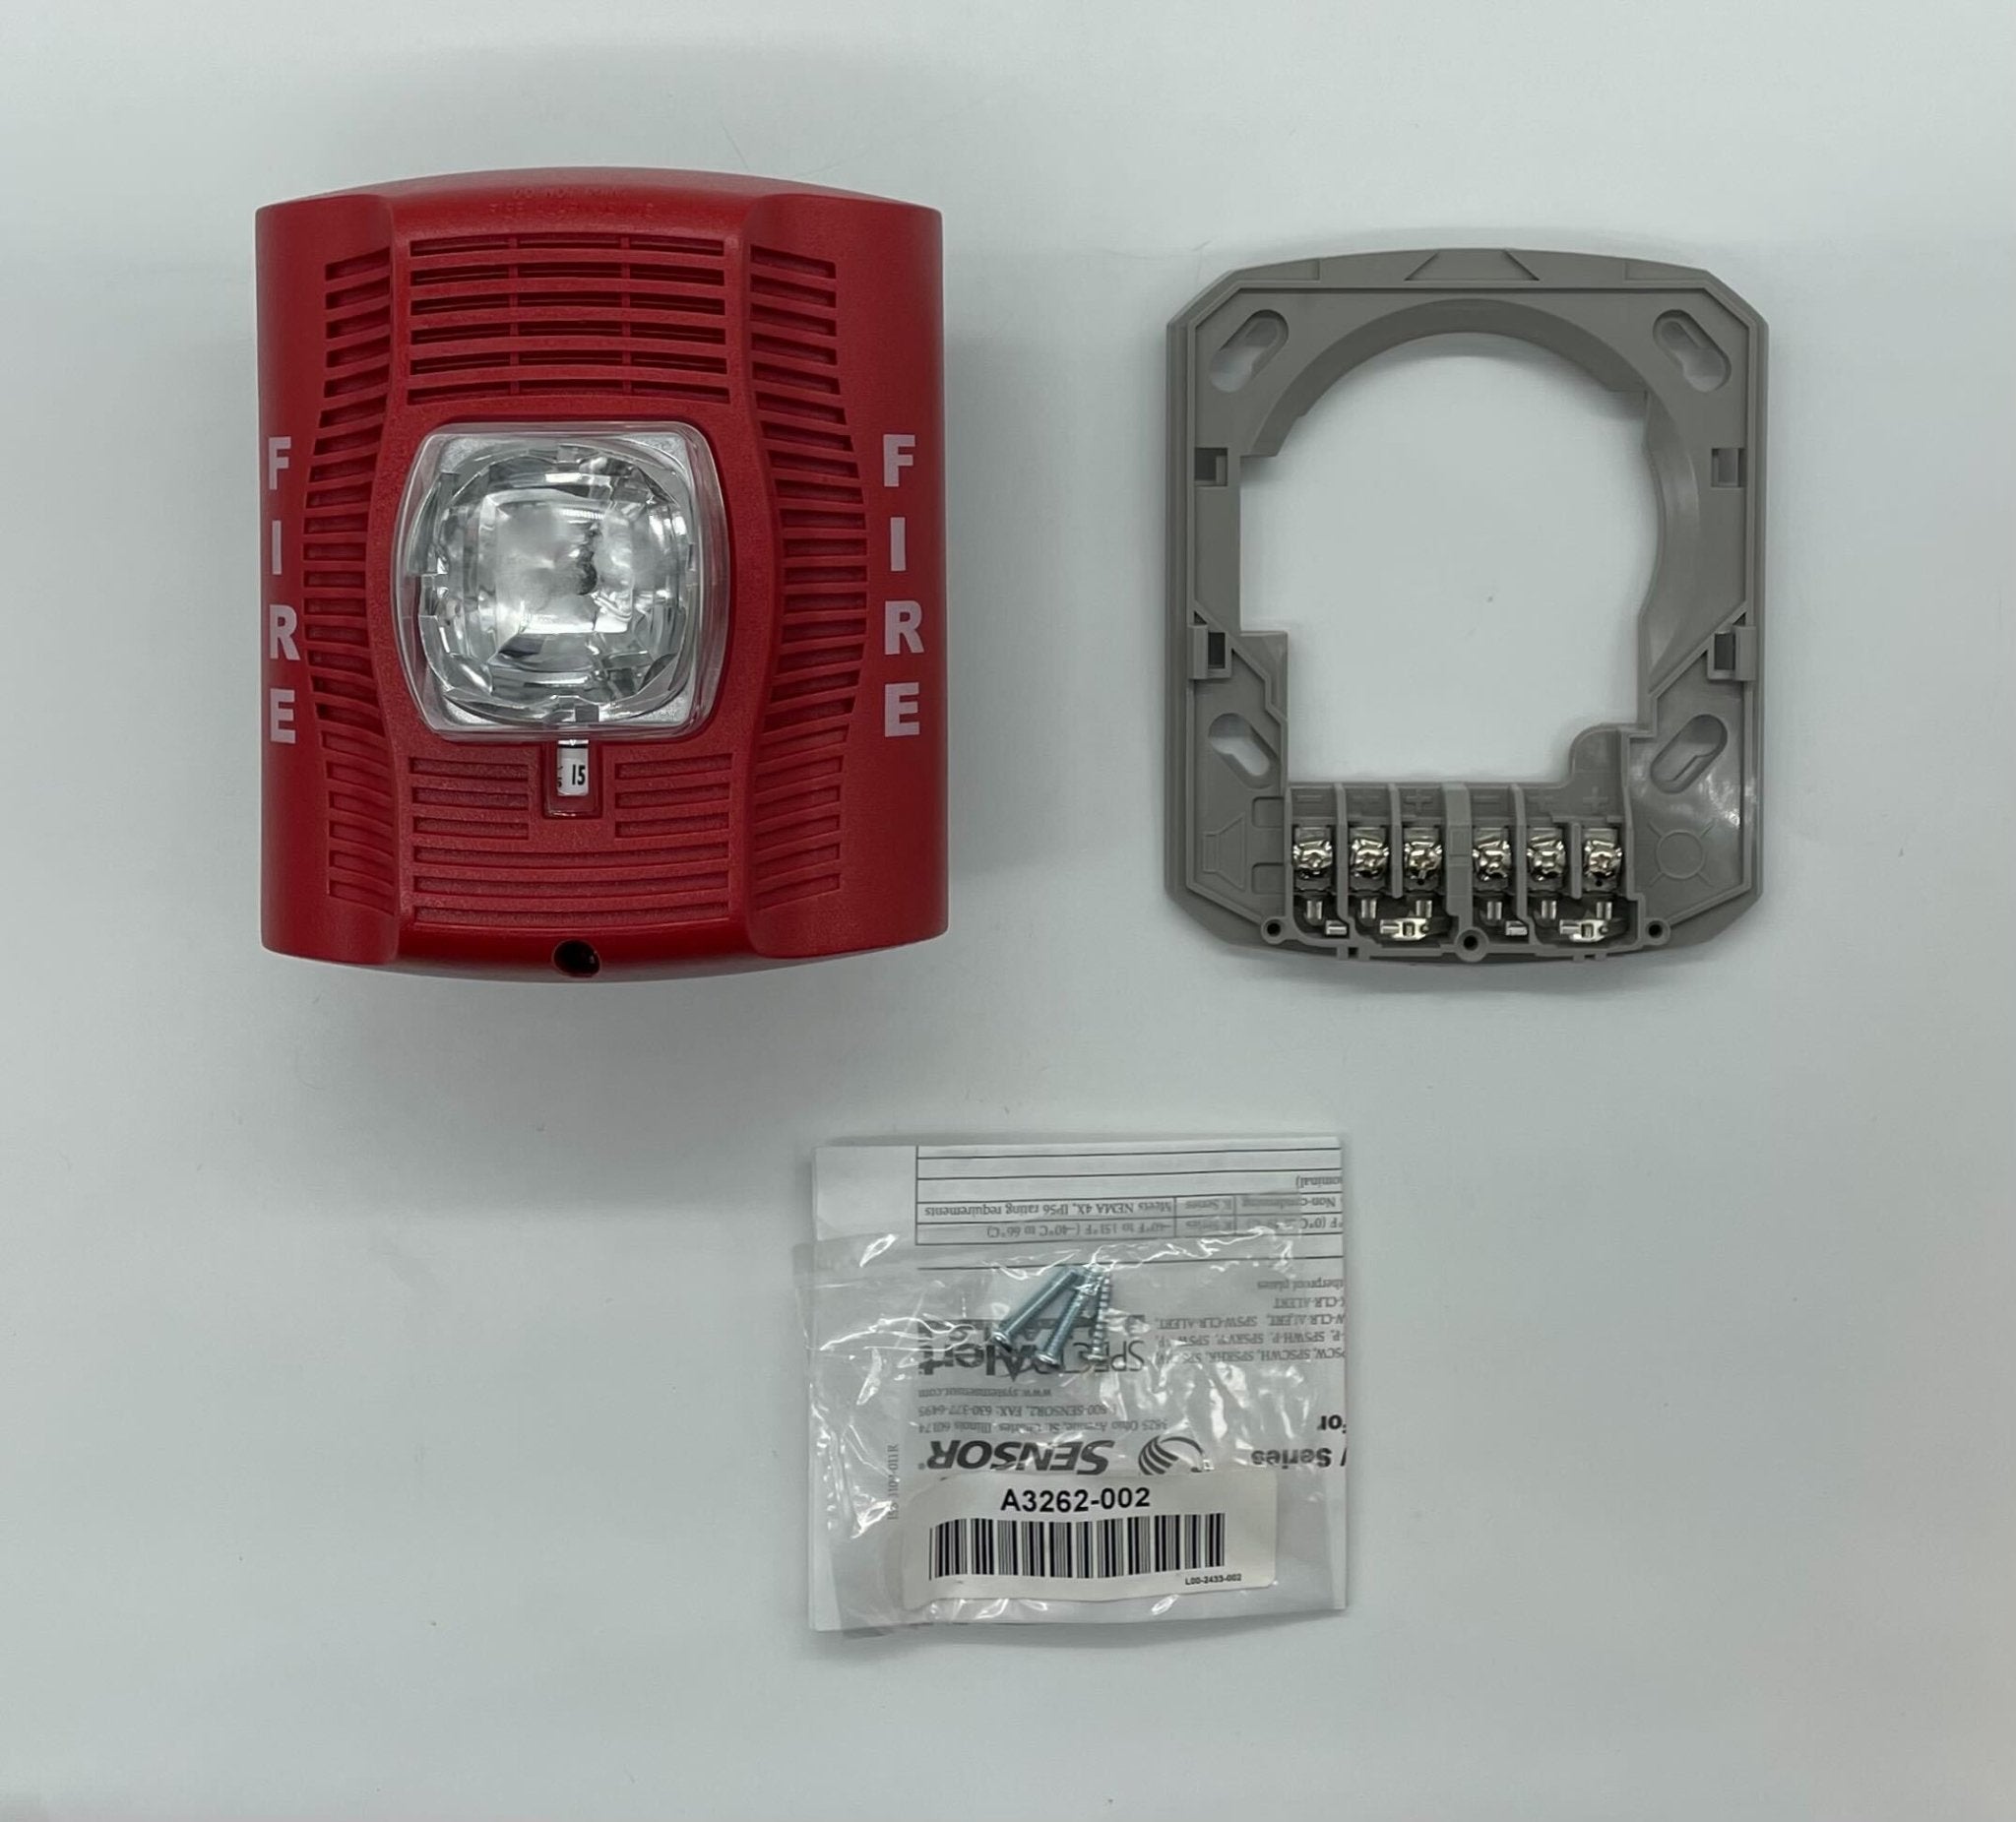 System Sensor SPSR - The Fire Alarm Supplier